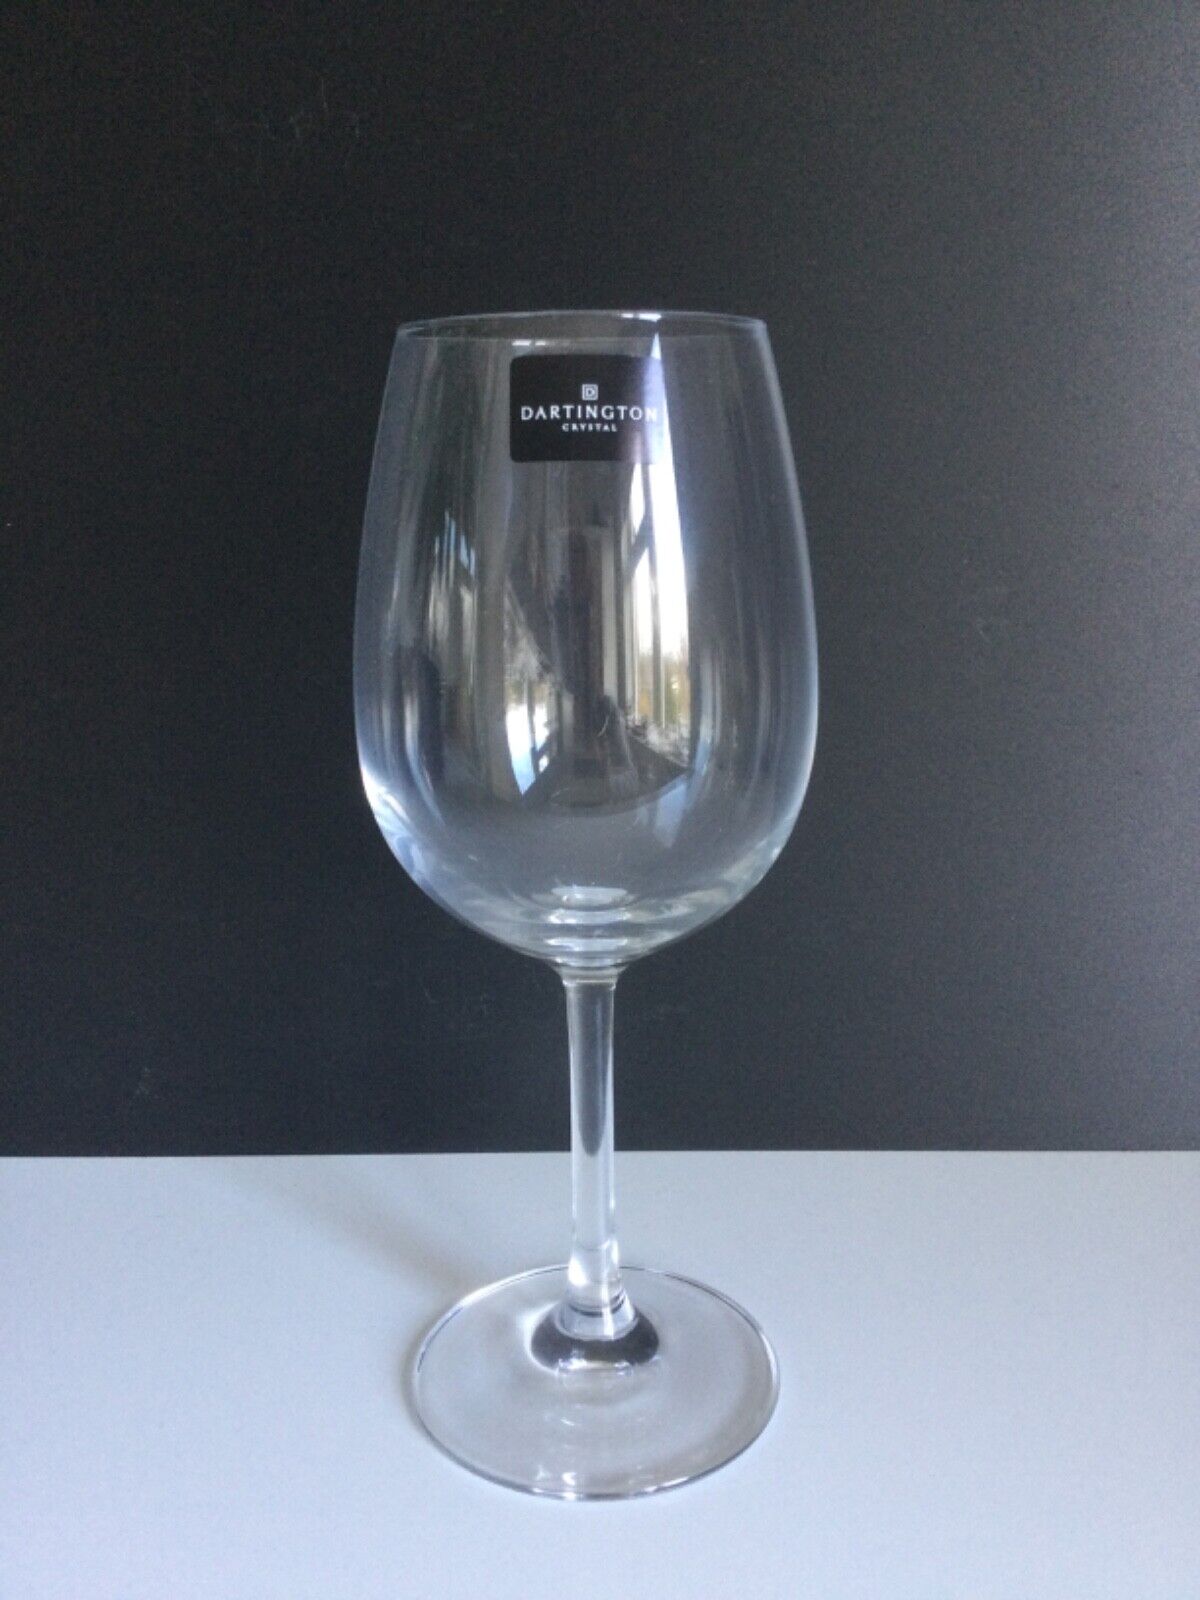 dartington glass wine glasses